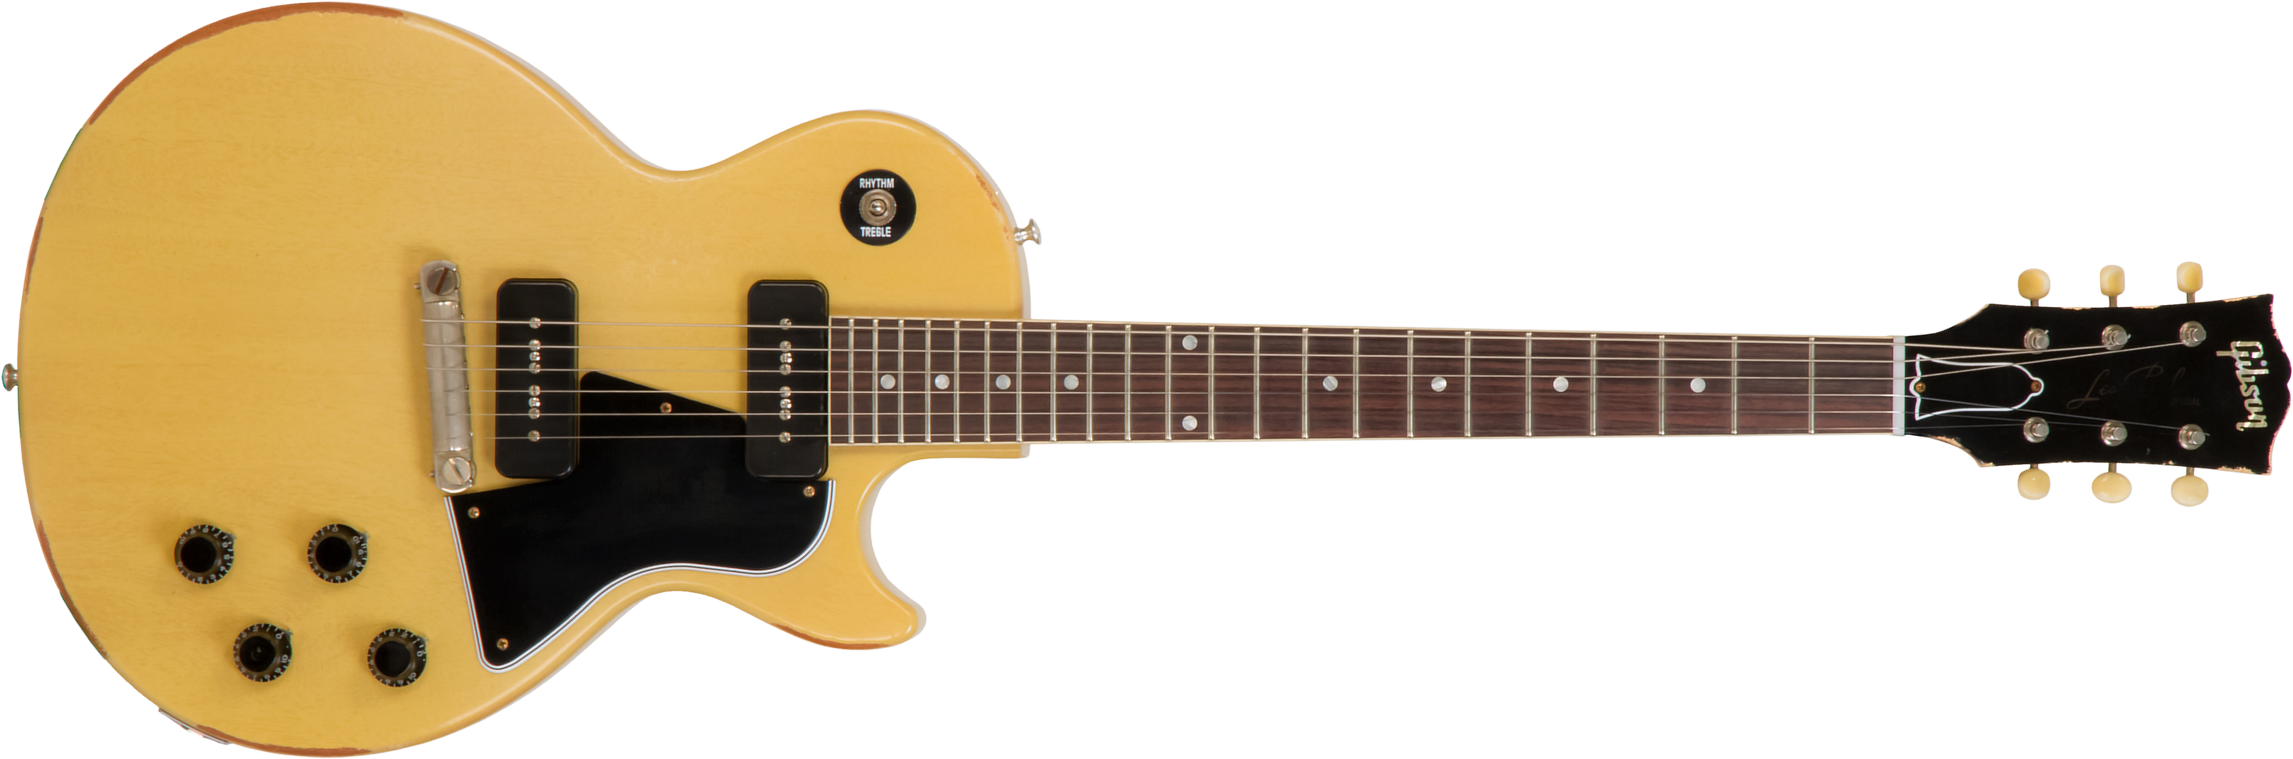 Gibson Custom Shop M2m Les Paul Special 1957 Single Cut Reissue P90 Ht Rw #70811 - Heavy Aged Tv Yellow - Guitare Électrique Single Cut - Main picture